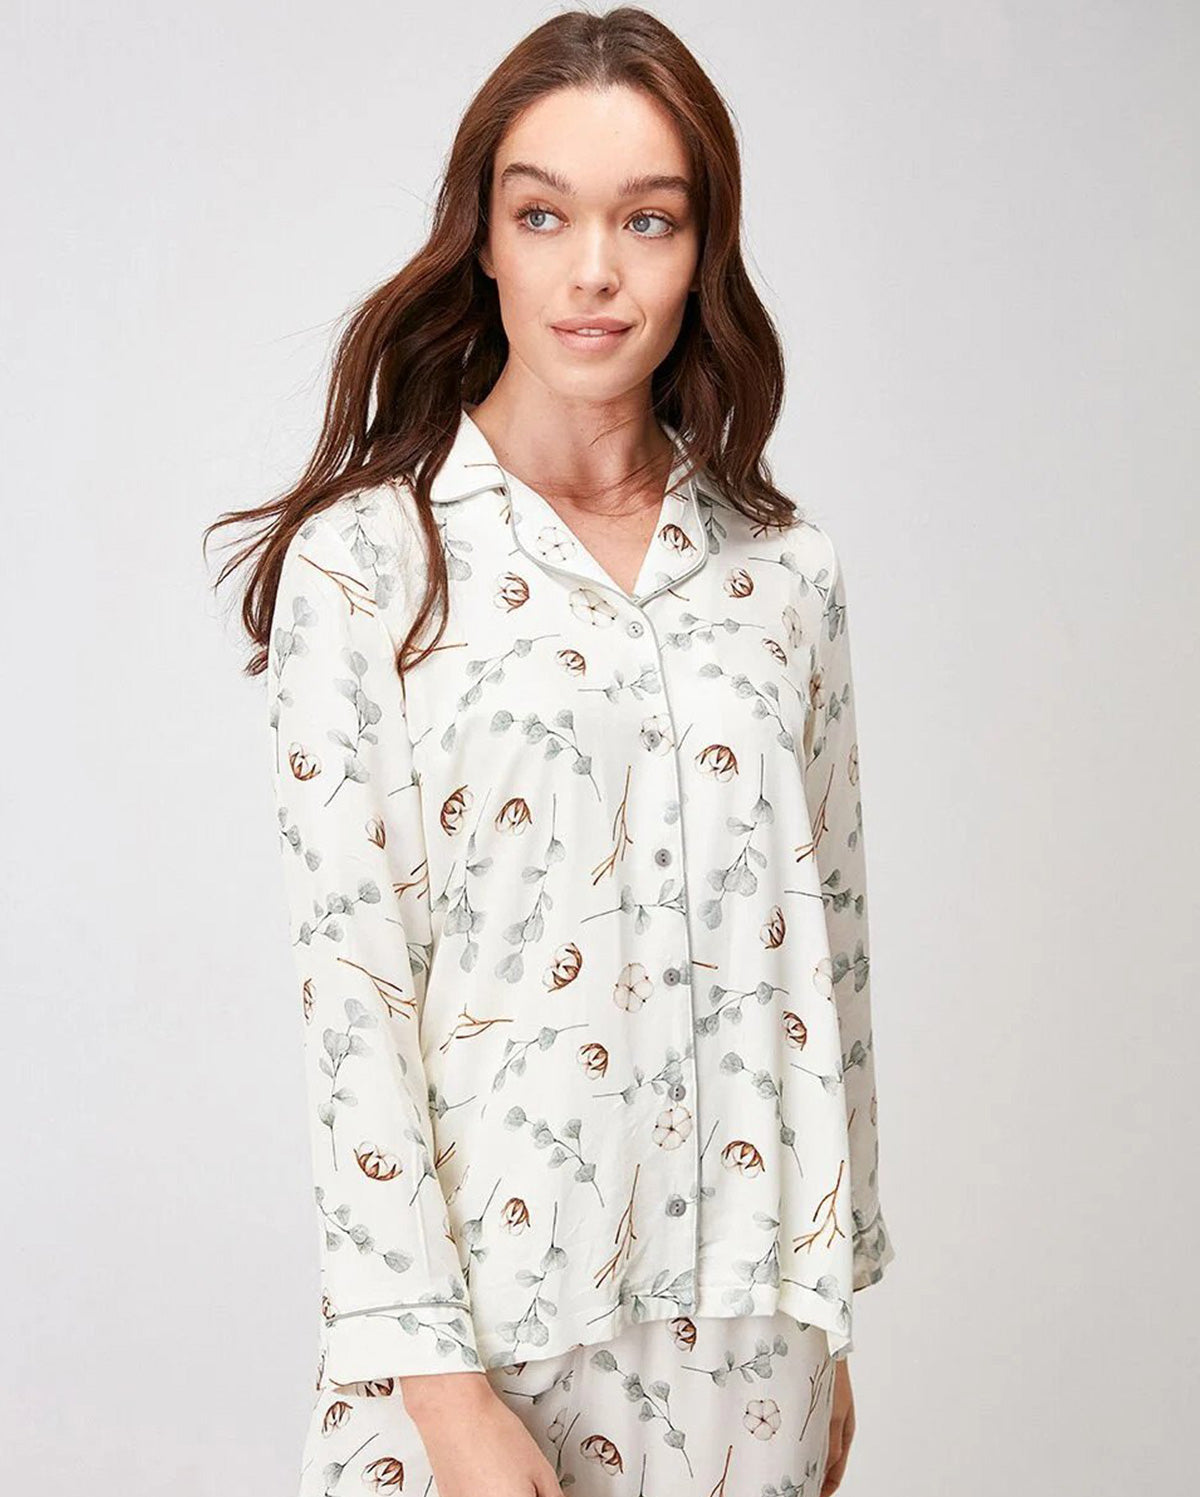 Floral Patterned Pyjama Set - White